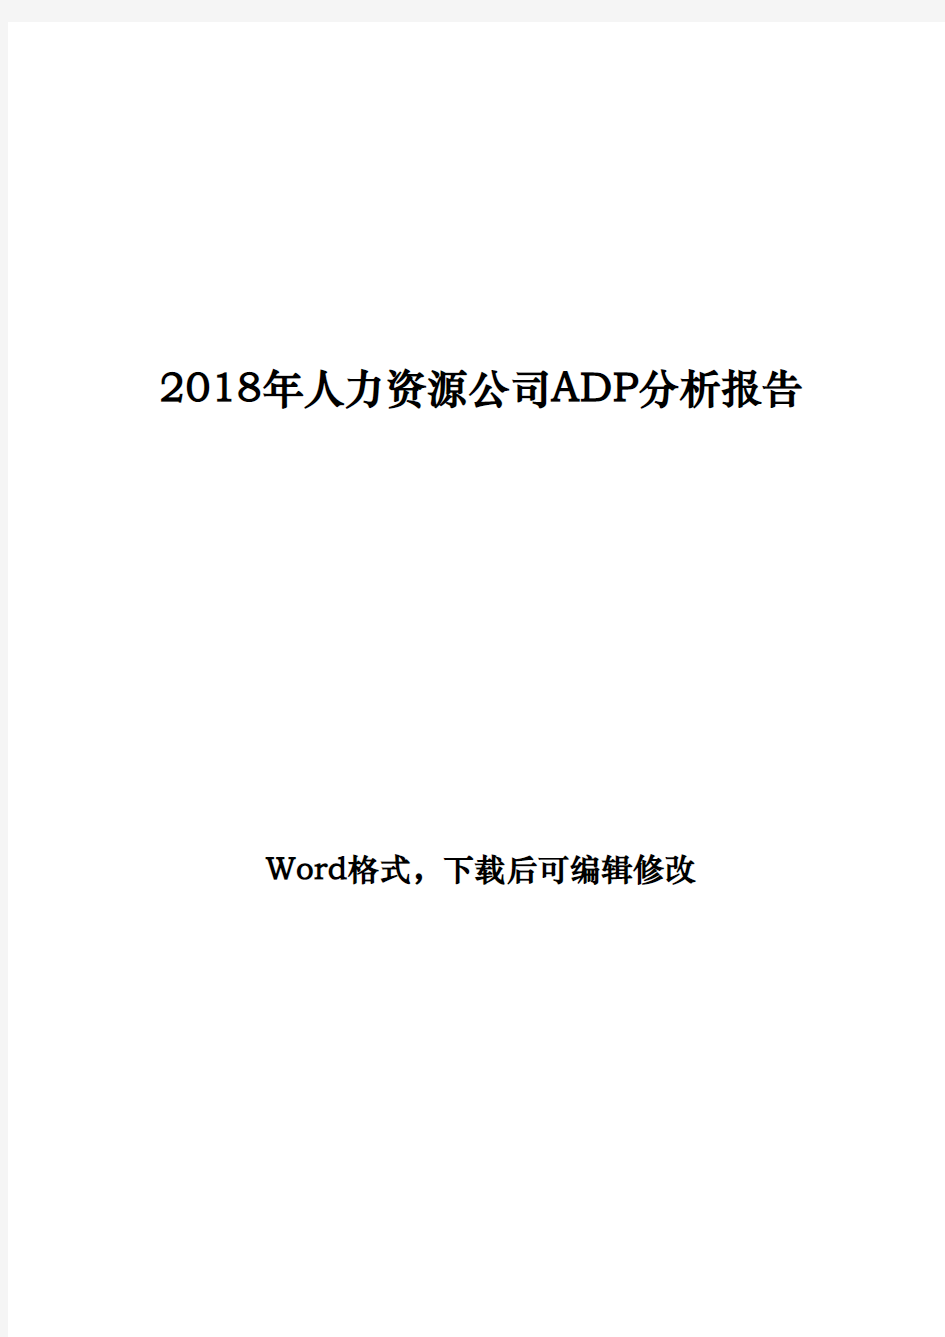 2018年人力资源公司ADP分析报告